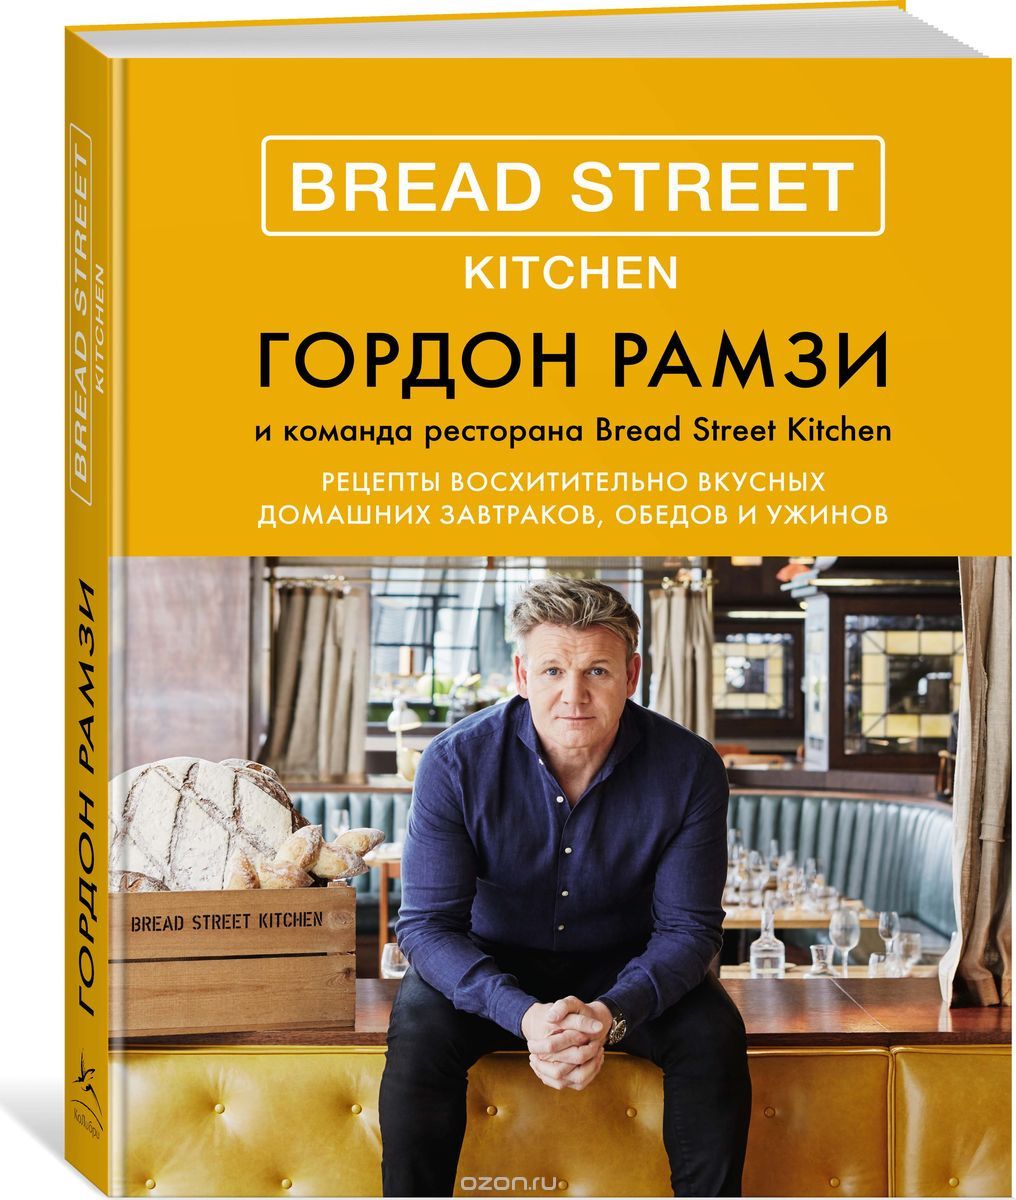 Bread Street Kitchen. Рецепты восхитительно вкусных домашних завтраков, обедов и ужинов, Гордон Рамзи